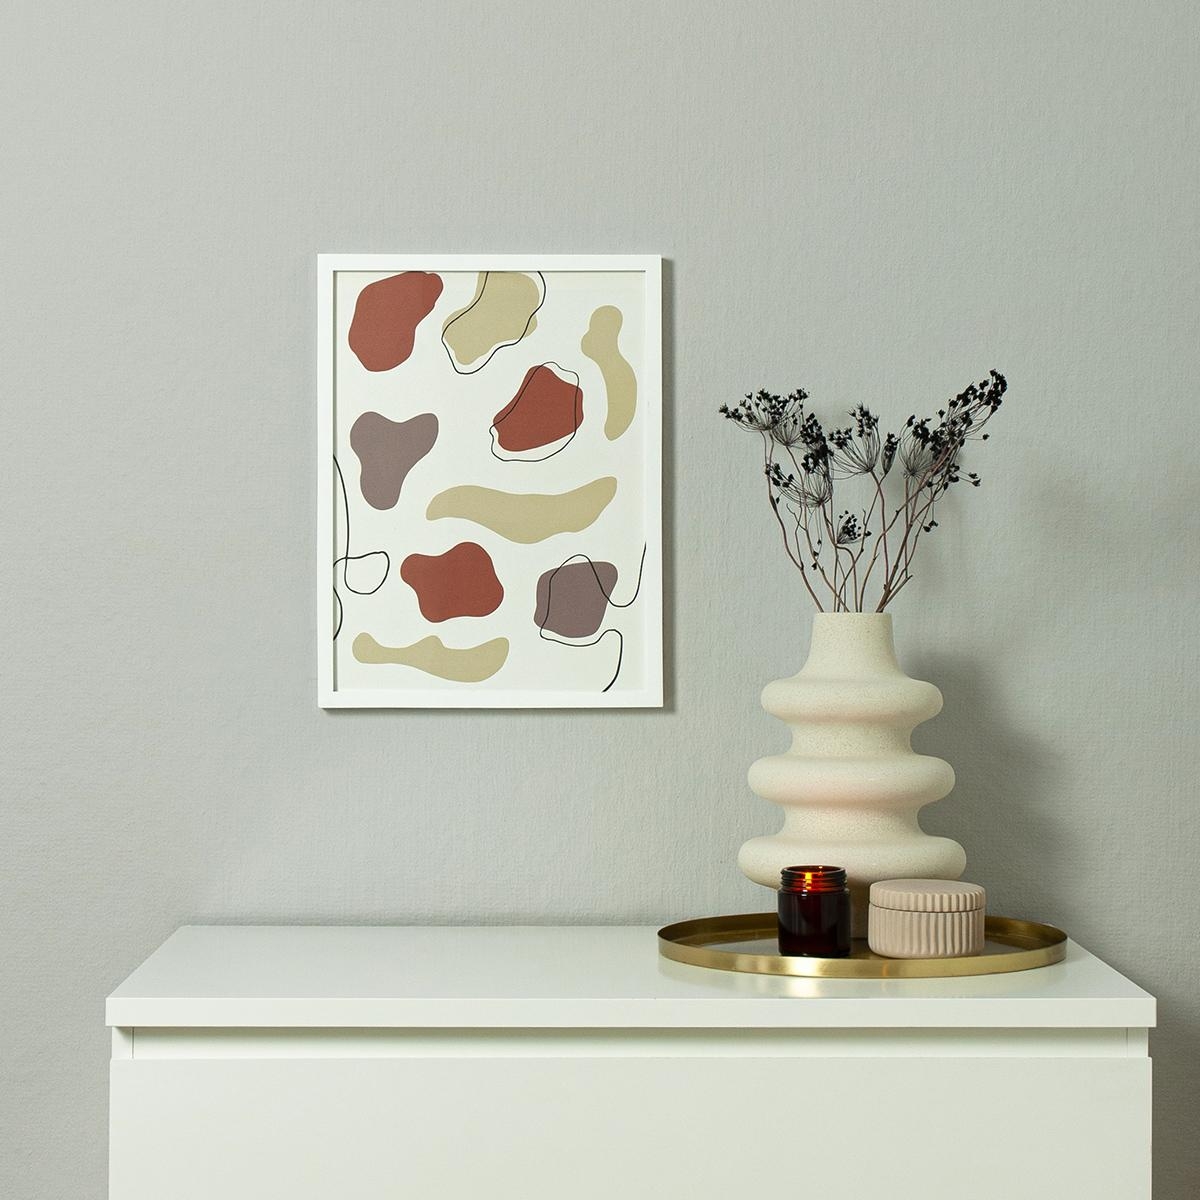 Das schöne "Leo Love"-Muster macht sich auch super als Print an der Wand! #couchpaperlove